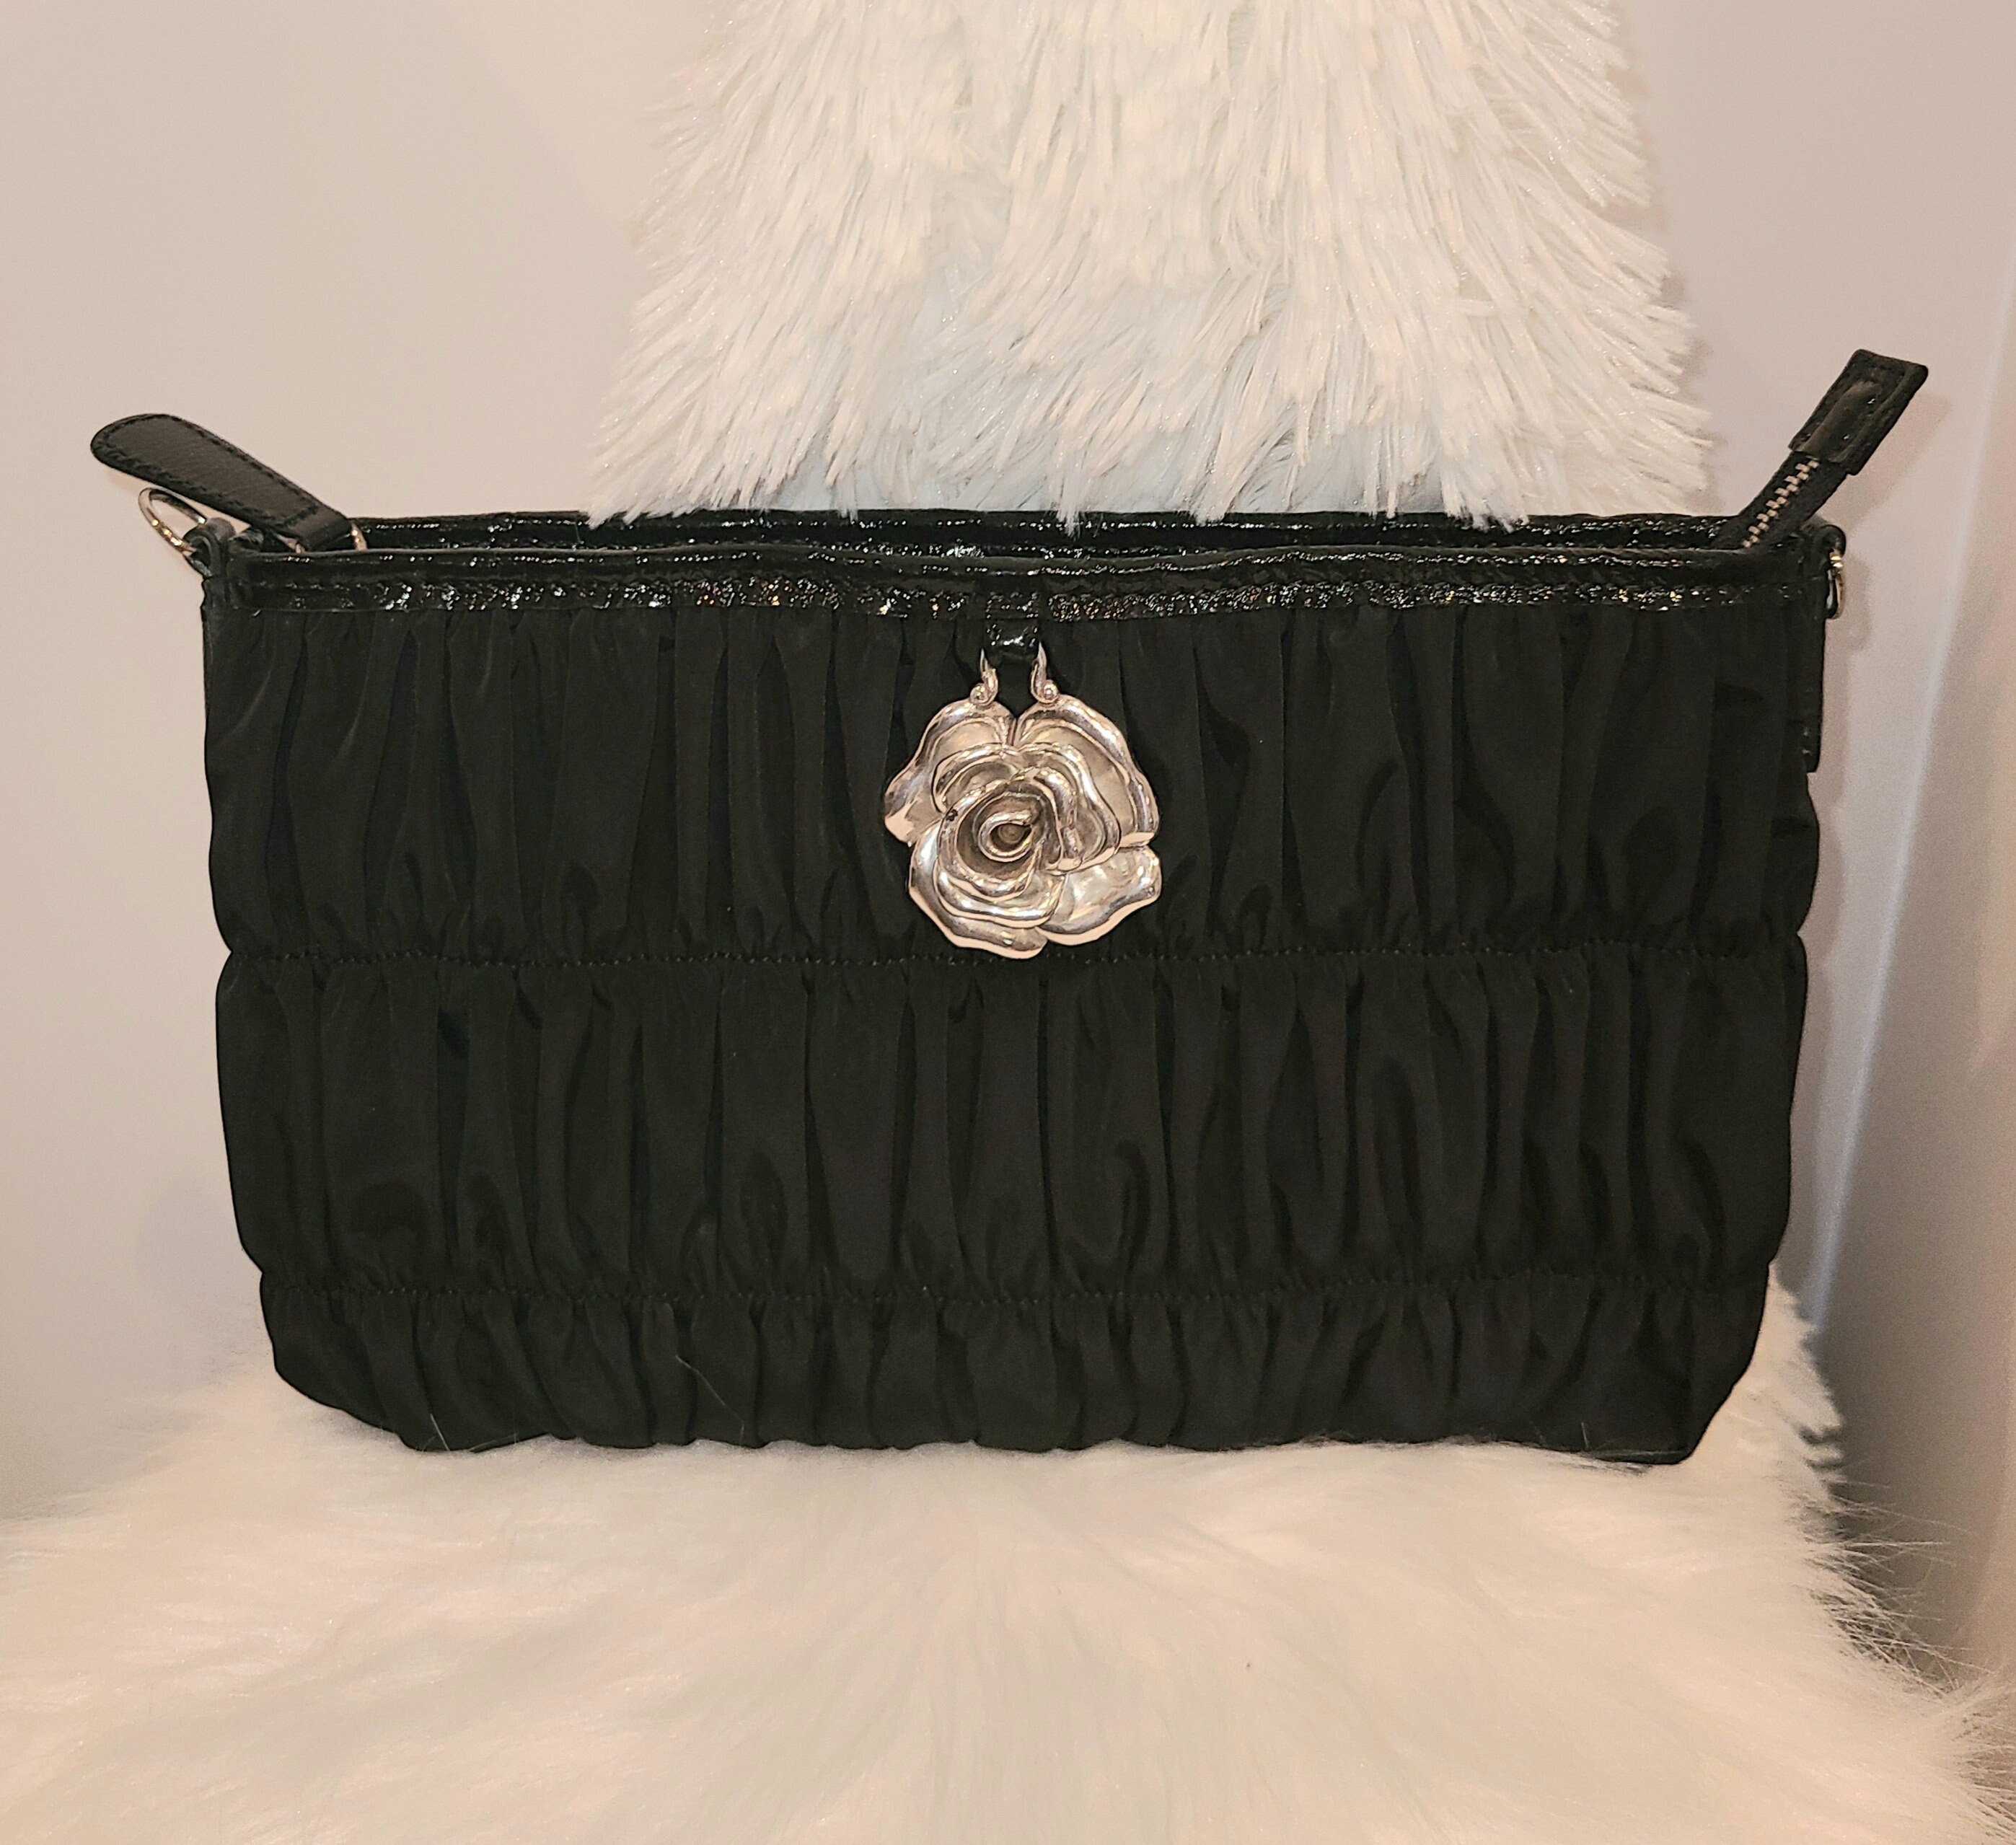 Lot 262 - A vintage Chanel black satin evening bag